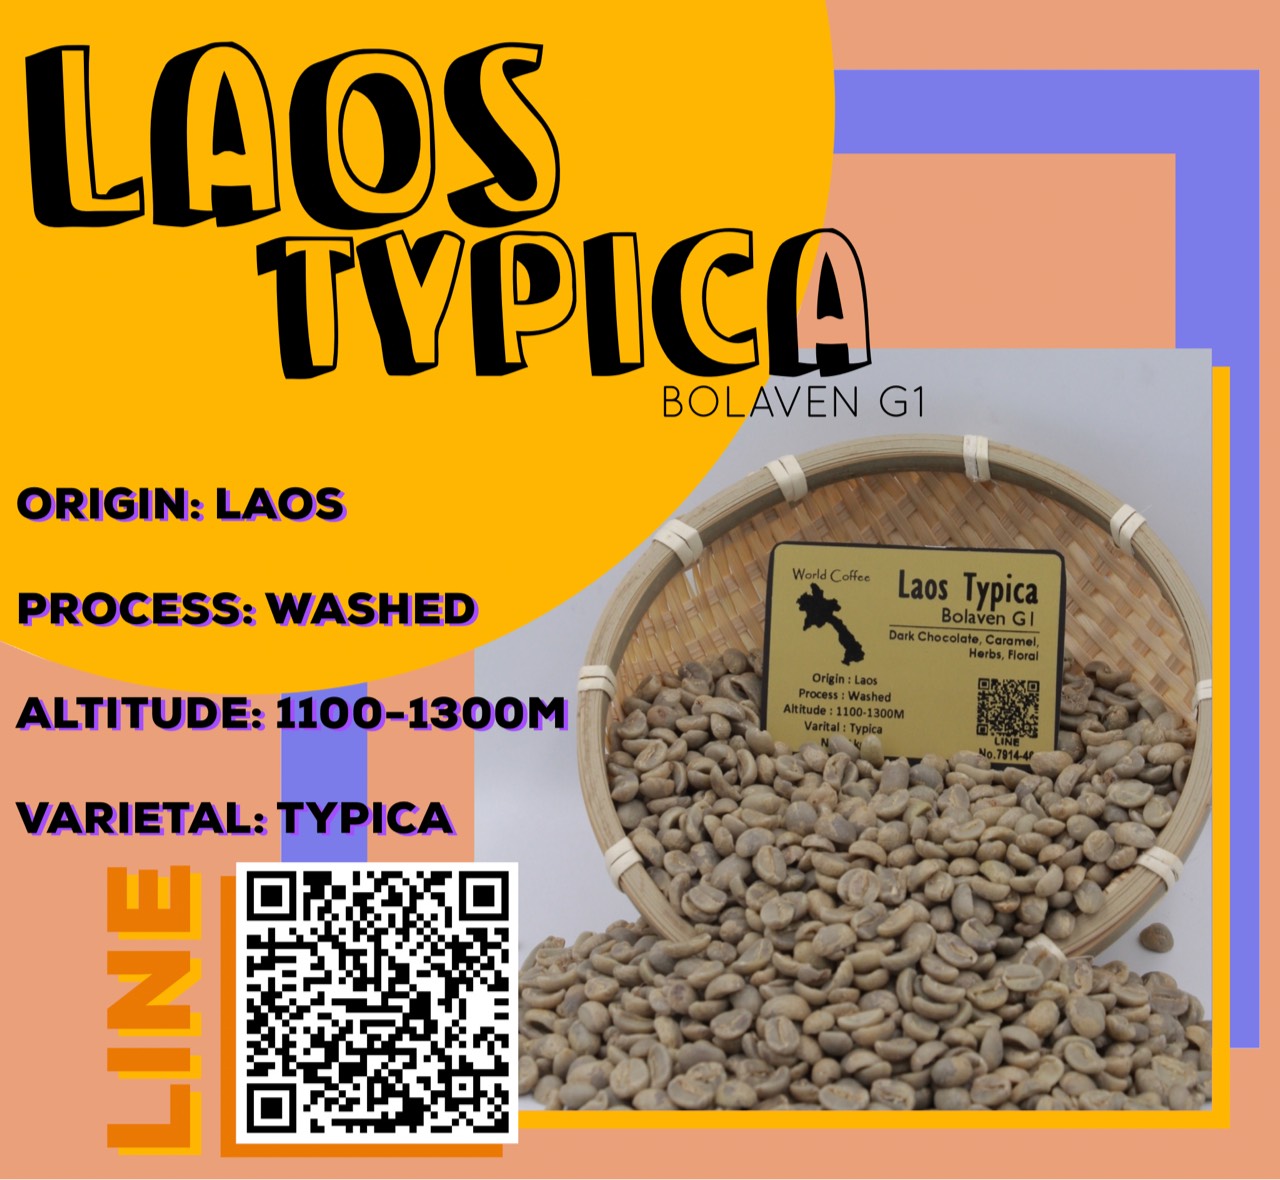 พร้อมส่ง เมล็ดกาแฟดิบ Laos typica Bolaven G1 washed process ขนาด 1kg. / เมล็ดกาแฟนอก/เมล็ด กาแฟสาร อราบิก้าลาว โบลาเวน เกรด 1/ Laos typica Bolaven G1 green beans 1kg